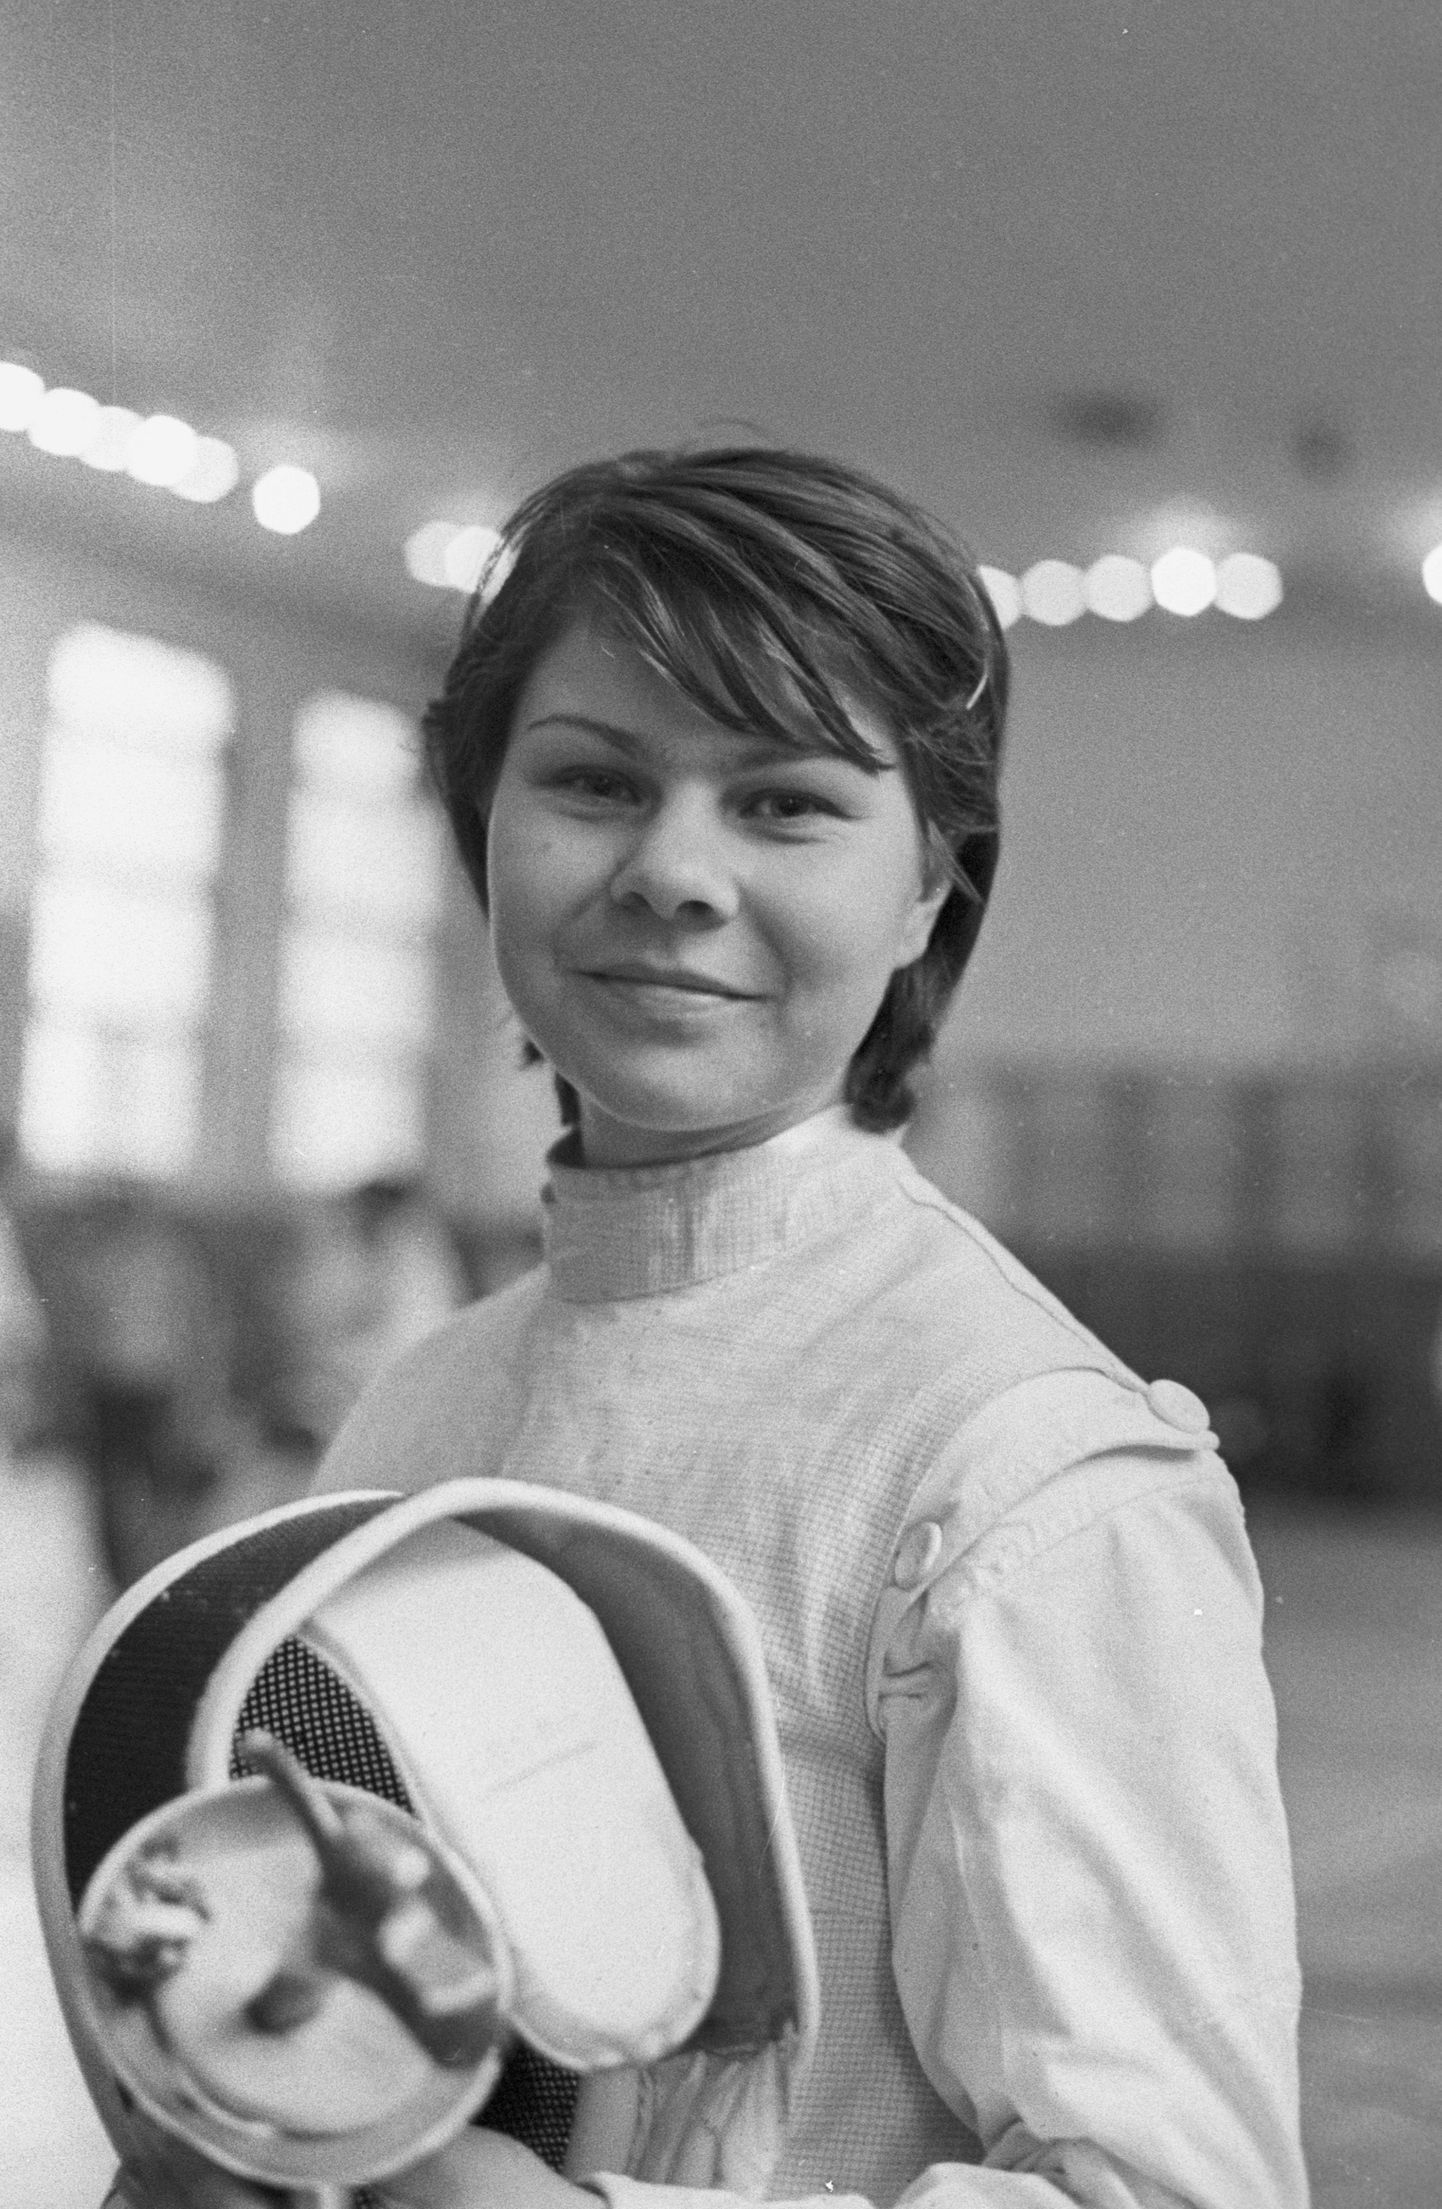 Svetlana Tširkova tuli floretis kahekordseks olümpiavõitjaks ja maailmameistriks. Täna noori epeevehklejaid treeniv naine oma endist lemmikala taga ei igatse.